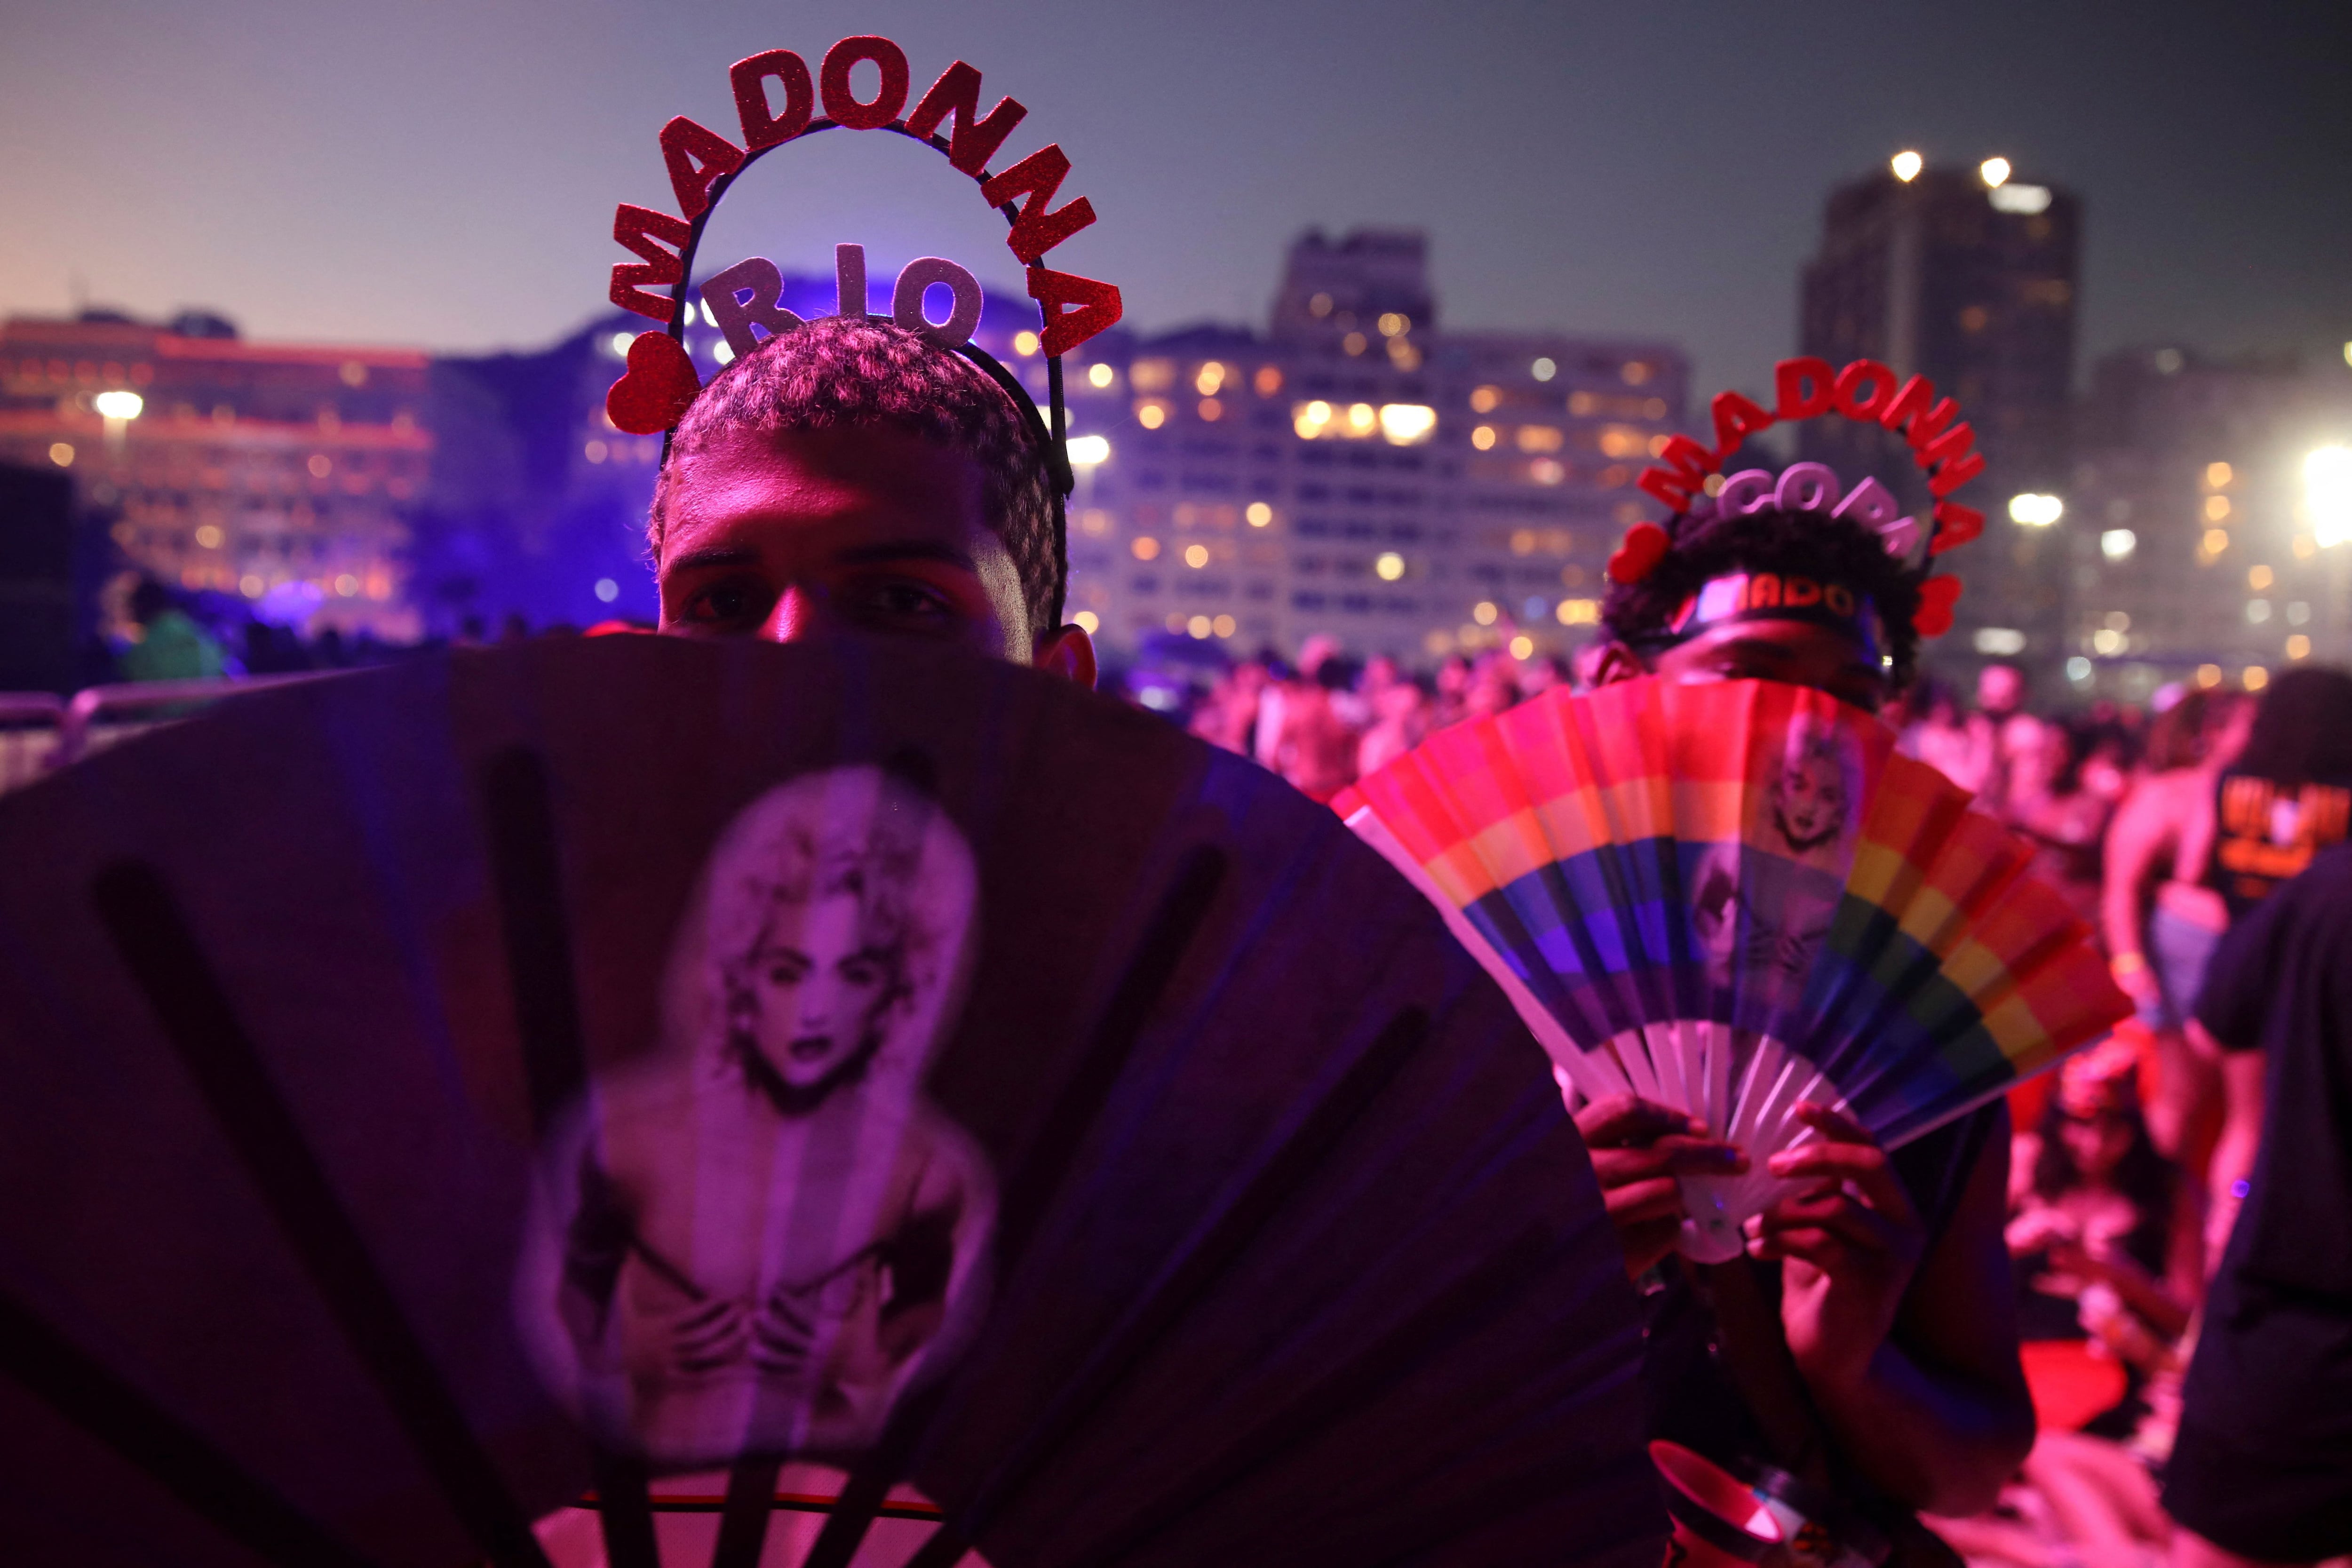 El público espera el show de Madonna con mucha alegría REUTERS/Lucas Landau